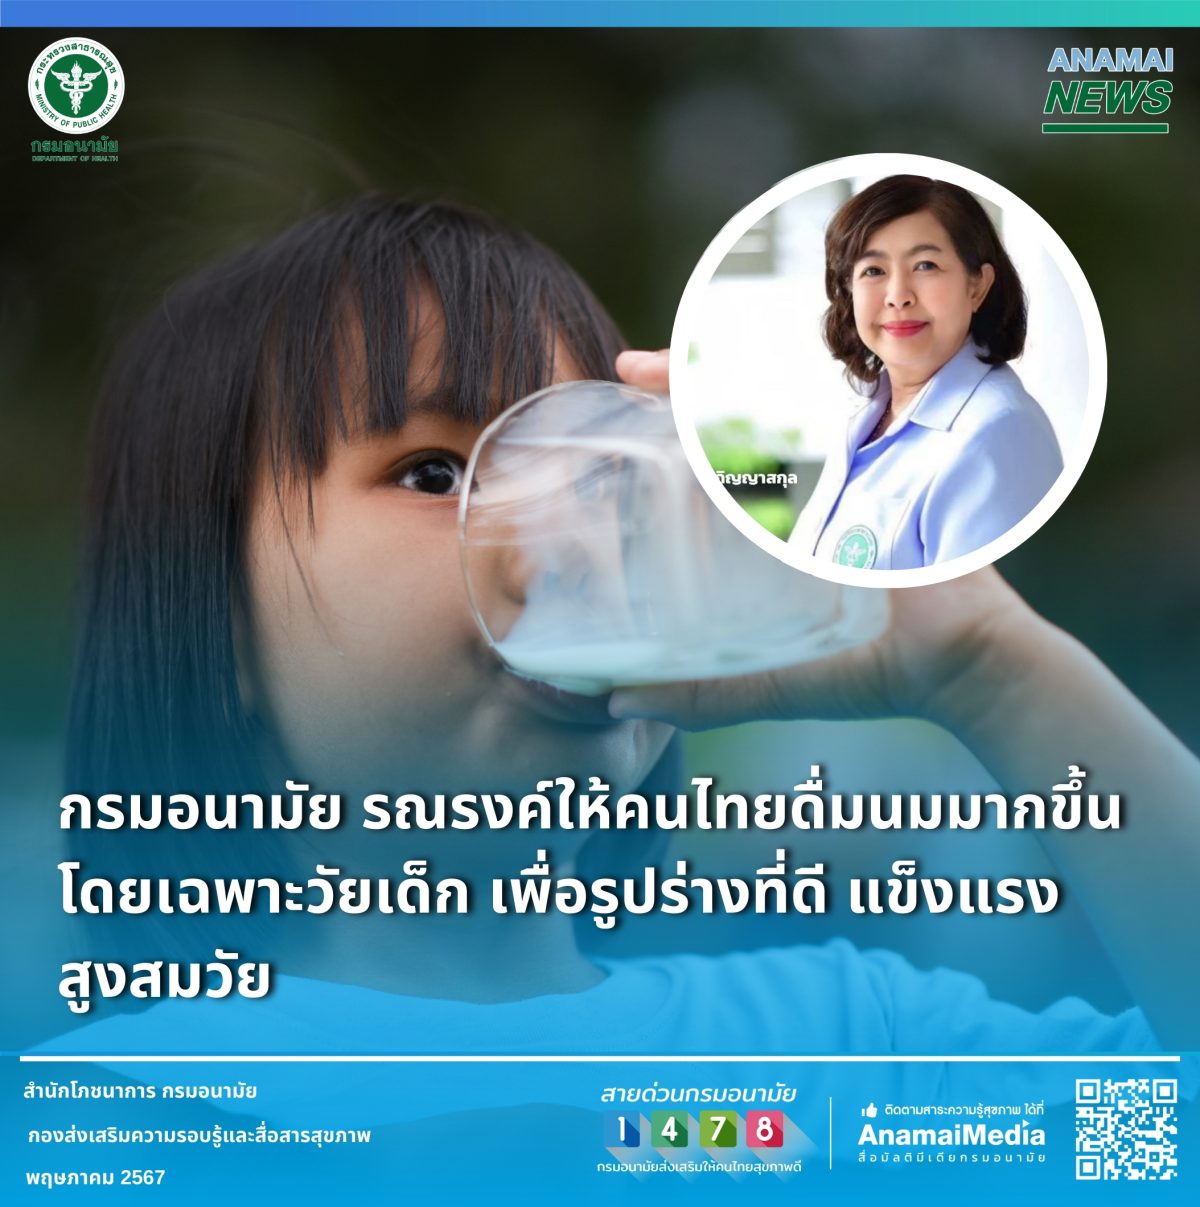 กรมอนามัย รณรงค์ให้คนไทยดื่มนมมากขึ้น โดยเฉพาะวัยเด็ก เพื่อรูปร่างที่ดี แข็งแรง สูงสมวัย